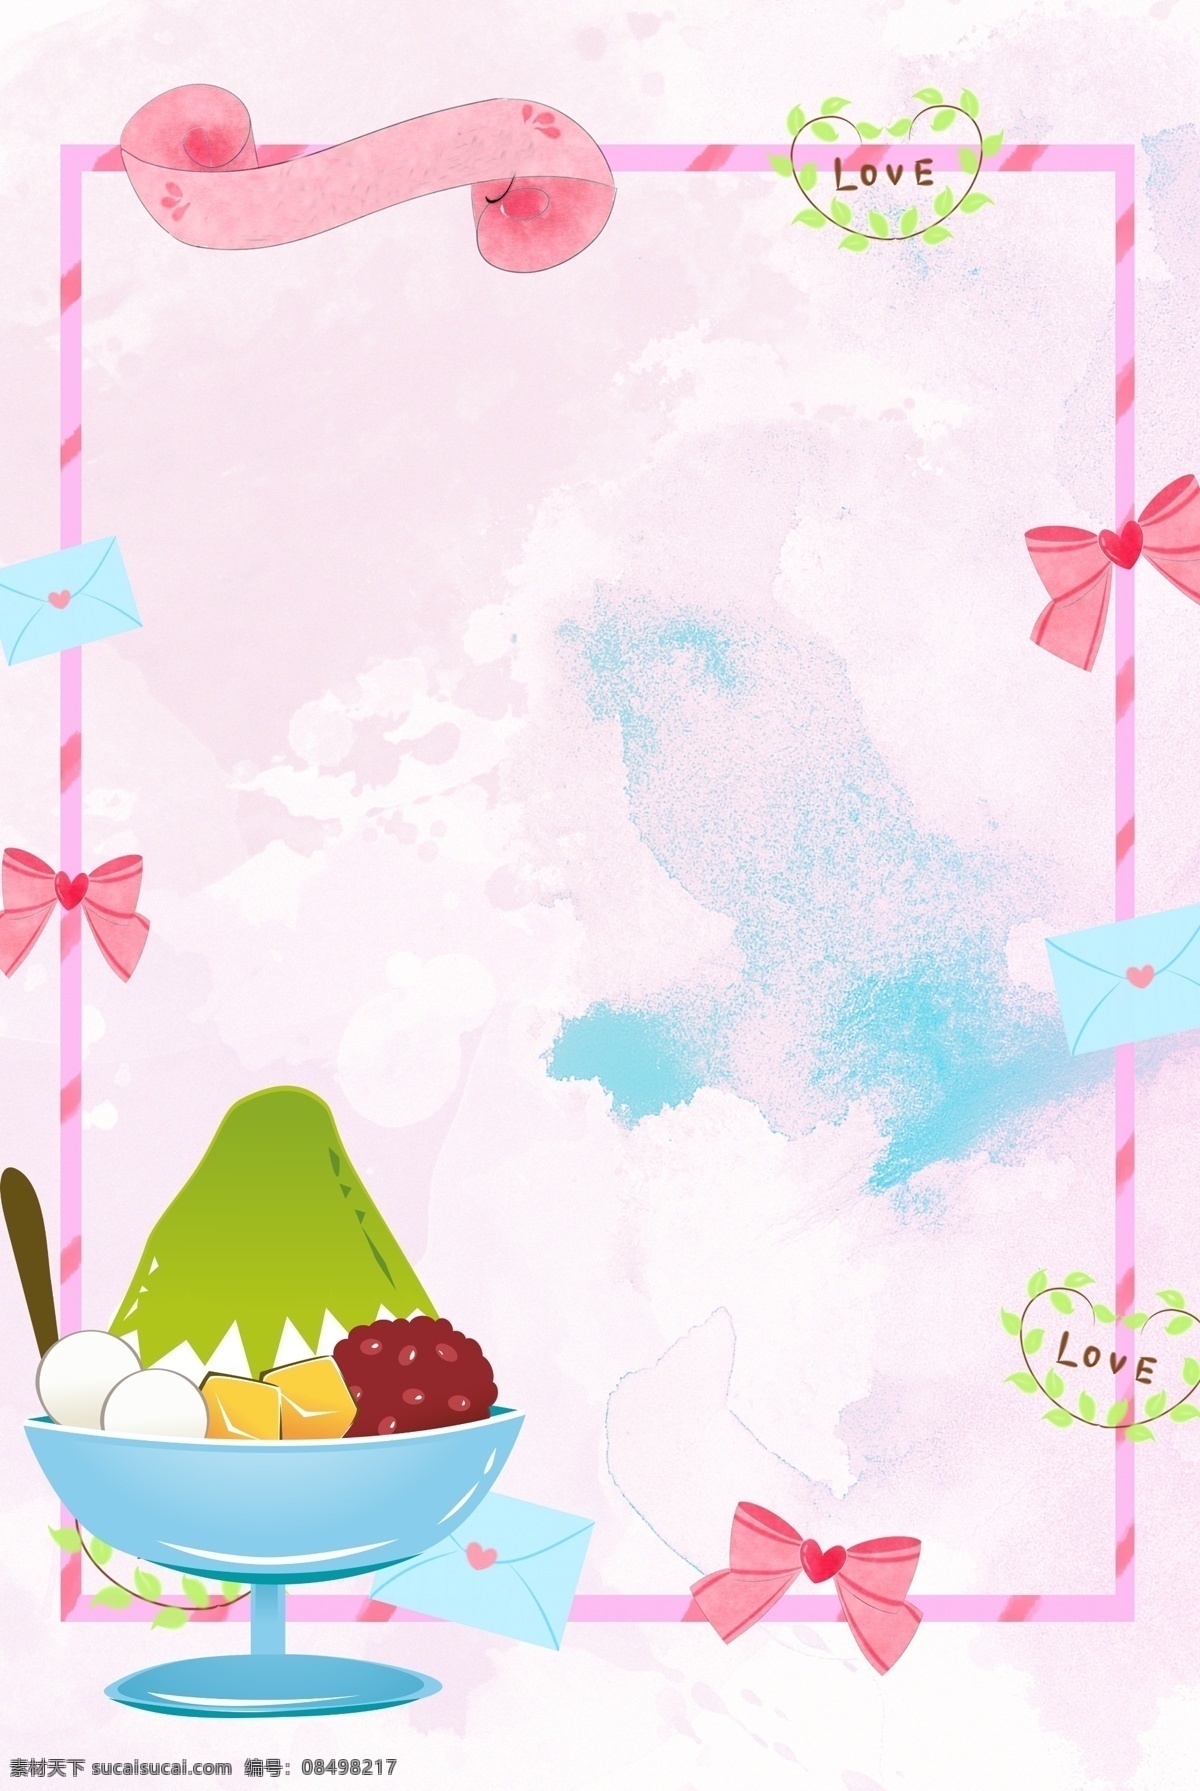 夏季 粉色 冰淇淋 背景 草莓味冰淇淋 圆筒冰淇淋 夏季美食 夏季食物 少女粉 冰凉 冰棒 卡通 可爱 圆筒 夏天 好